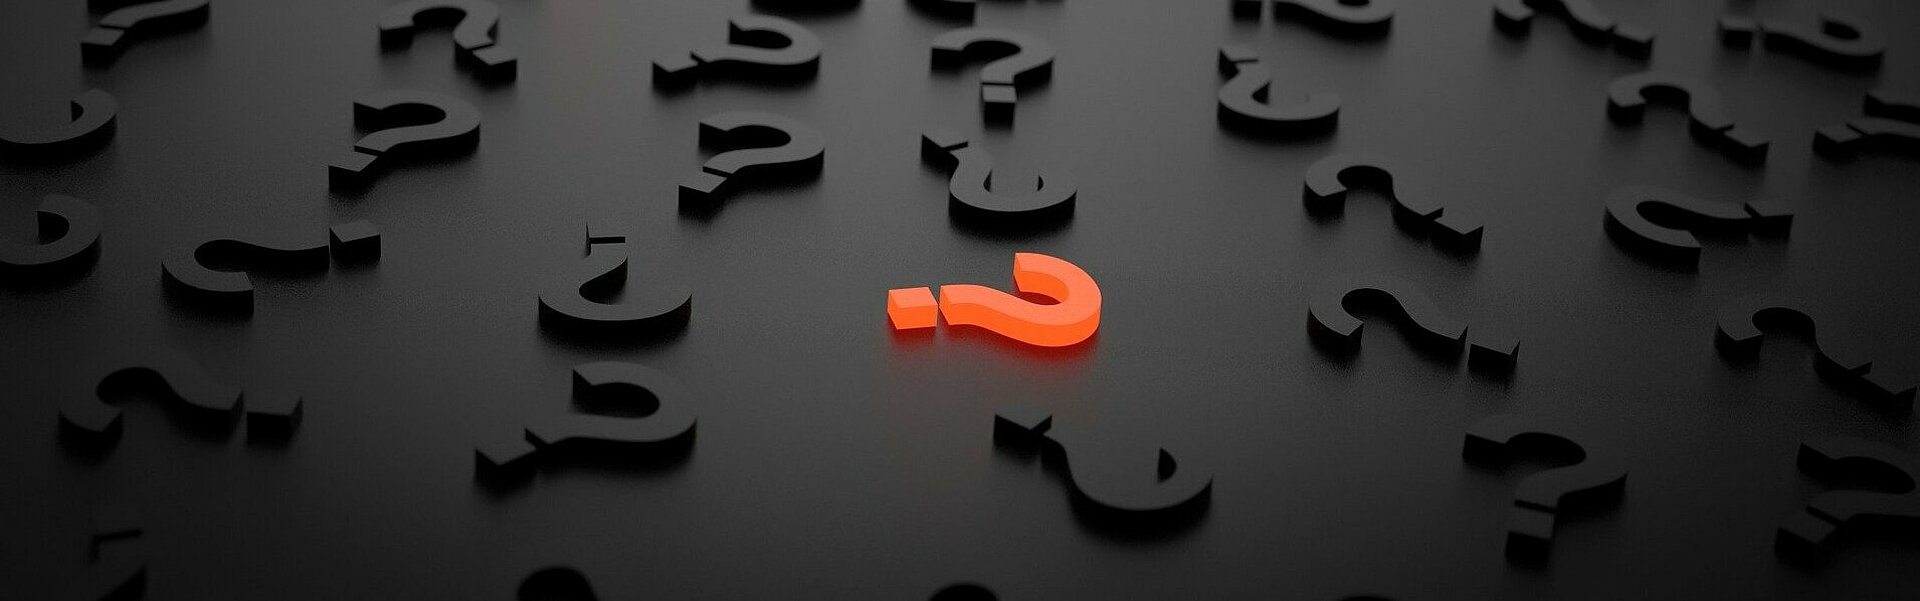 Oranges Fragezeichen inmitten schwarzer 3D-Buchstaben auf schwarzem Untergrund | Foto question-mark-1872665 auf pixabay.com